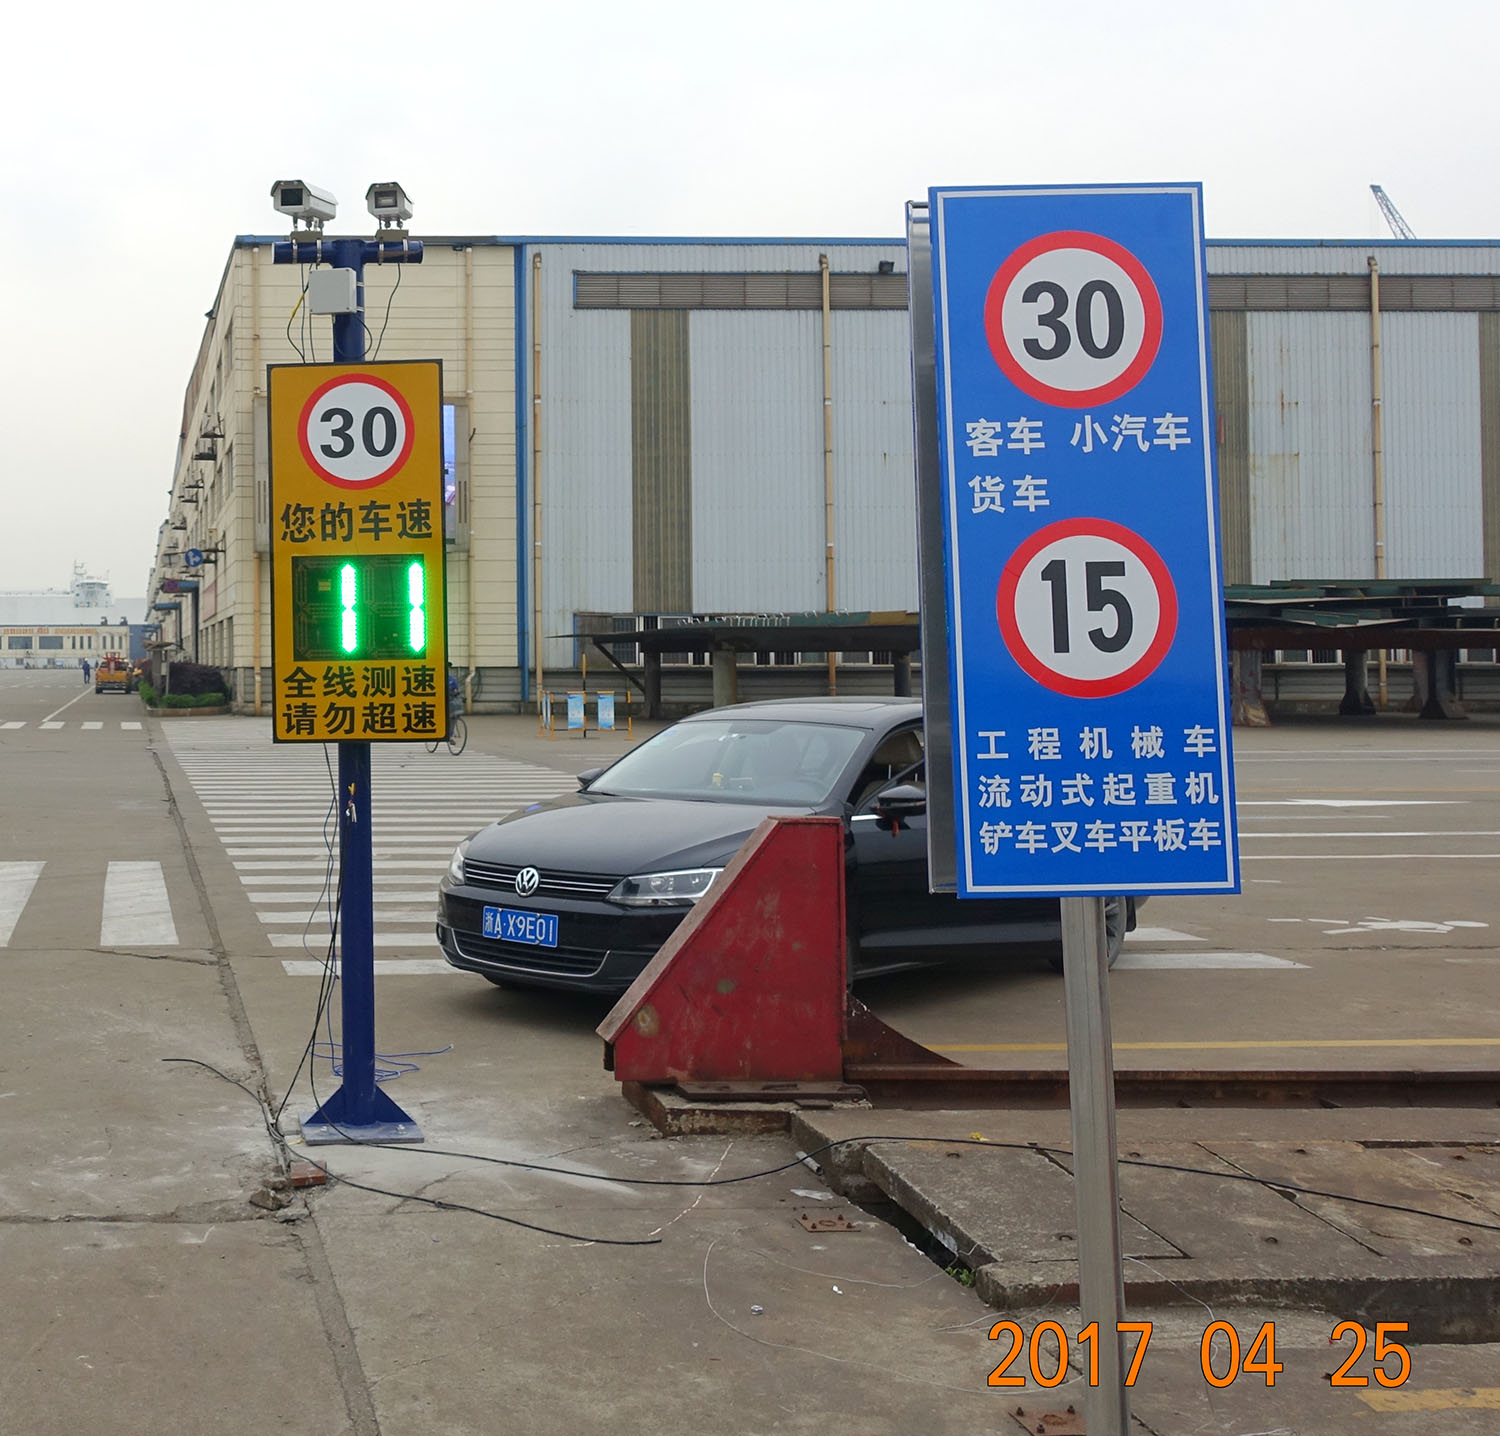 南京港口的测速抓拍显示屏